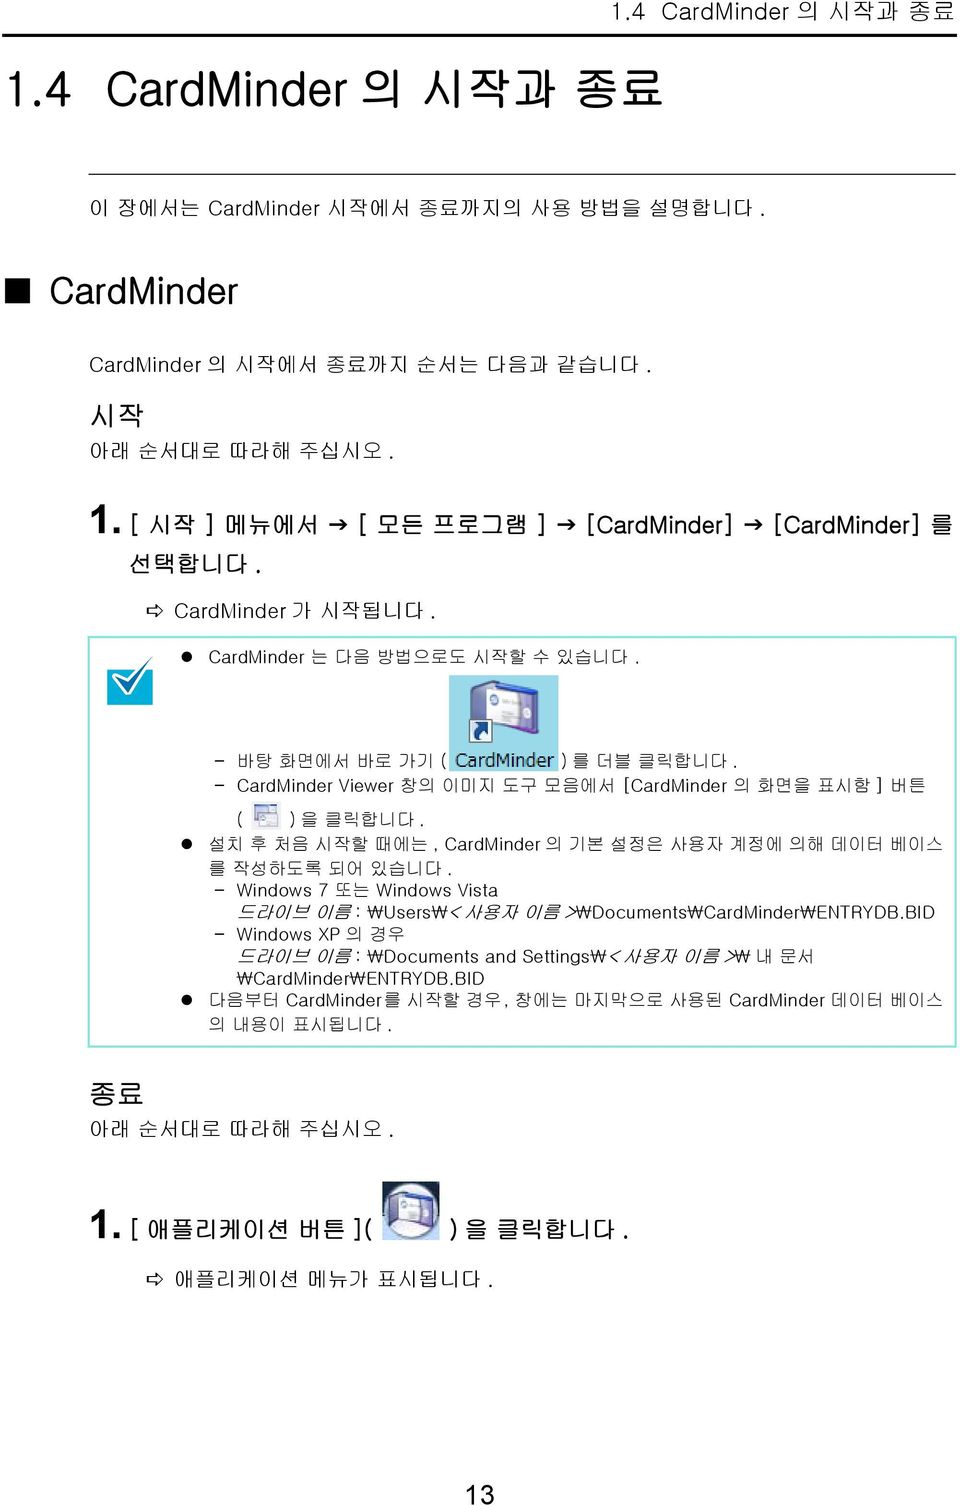 설치 후 처음 시작할 때에는, CardMinder 의 기본 설정은 사용자 계정에 의해 데이터 베이스 를 작성하도록 되어 있습니다. - Windows 7 또는 Windows Vista 드라이브 이름 : \Users\< 사용자 이름 >\Documents\CardMinder\ENTRYDB.